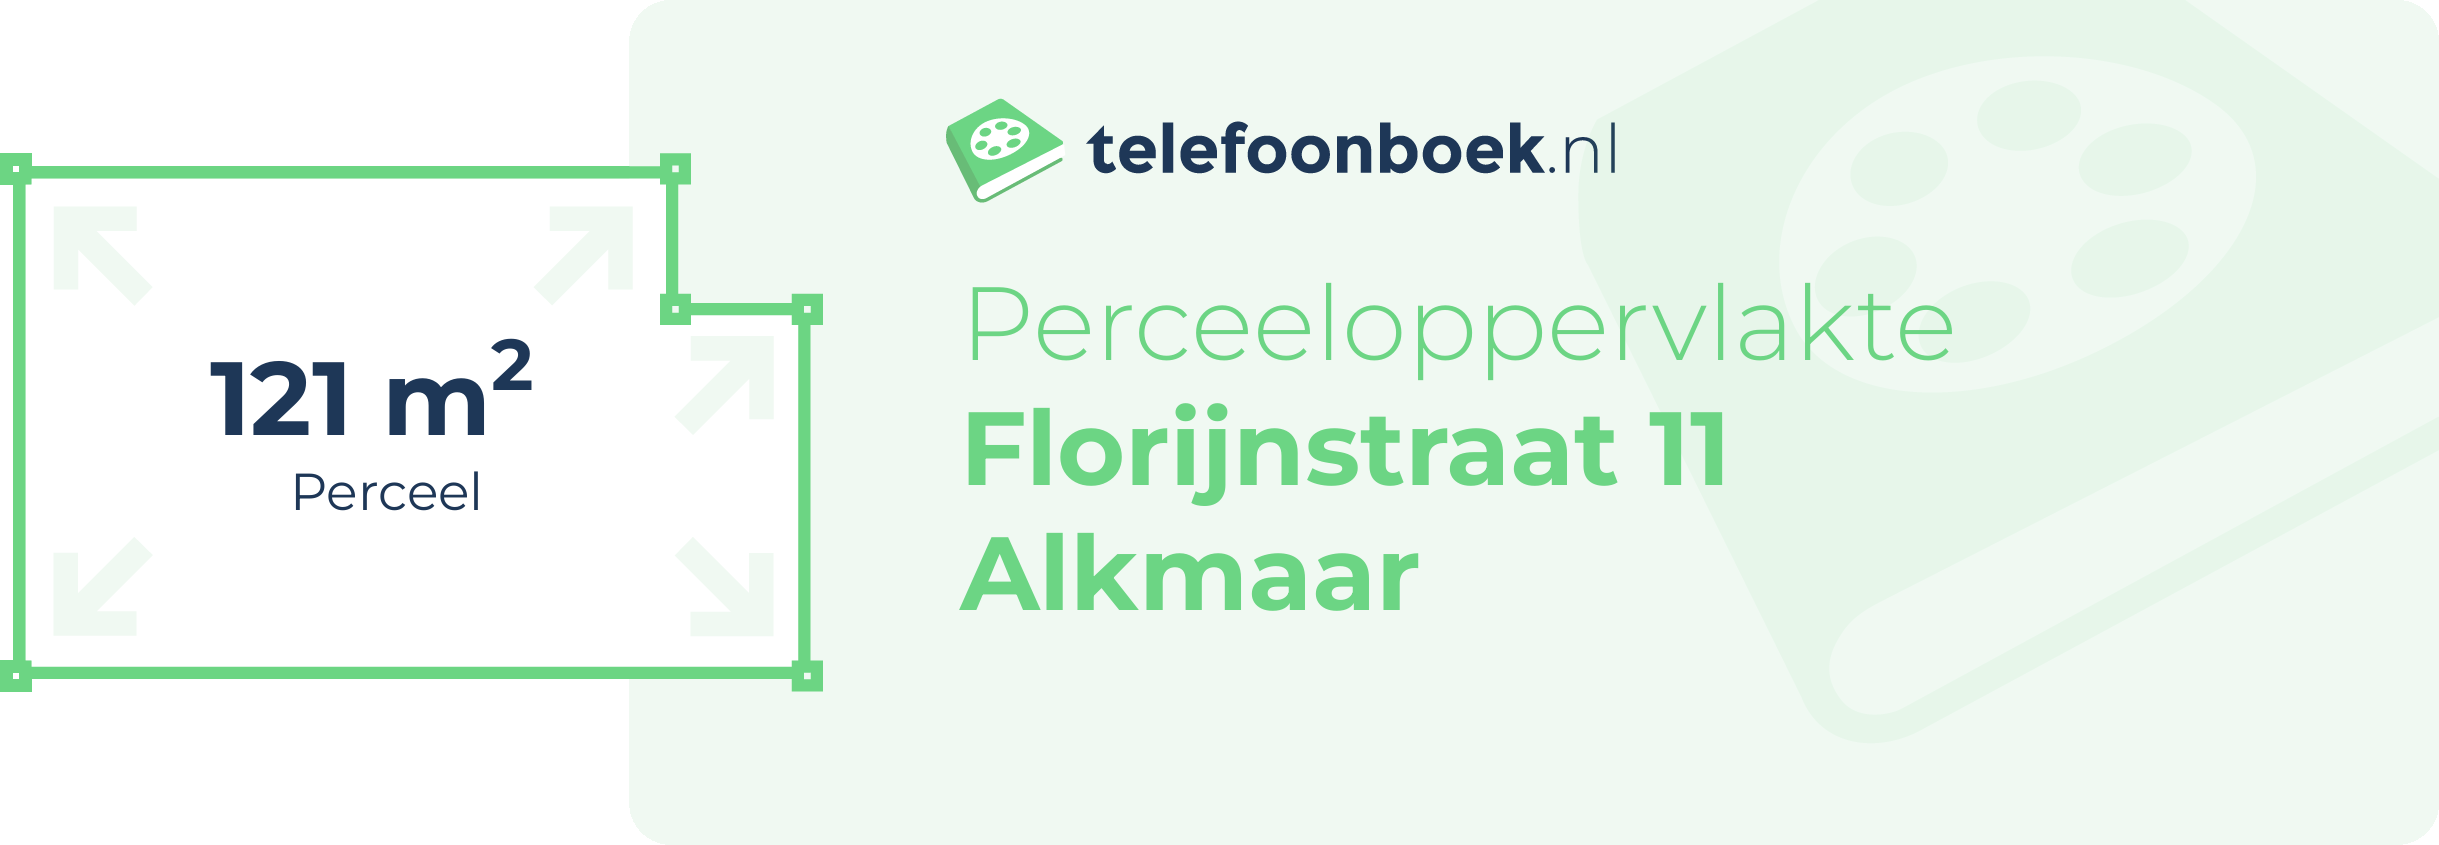 Perceeloppervlakte Florijnstraat 11 Alkmaar